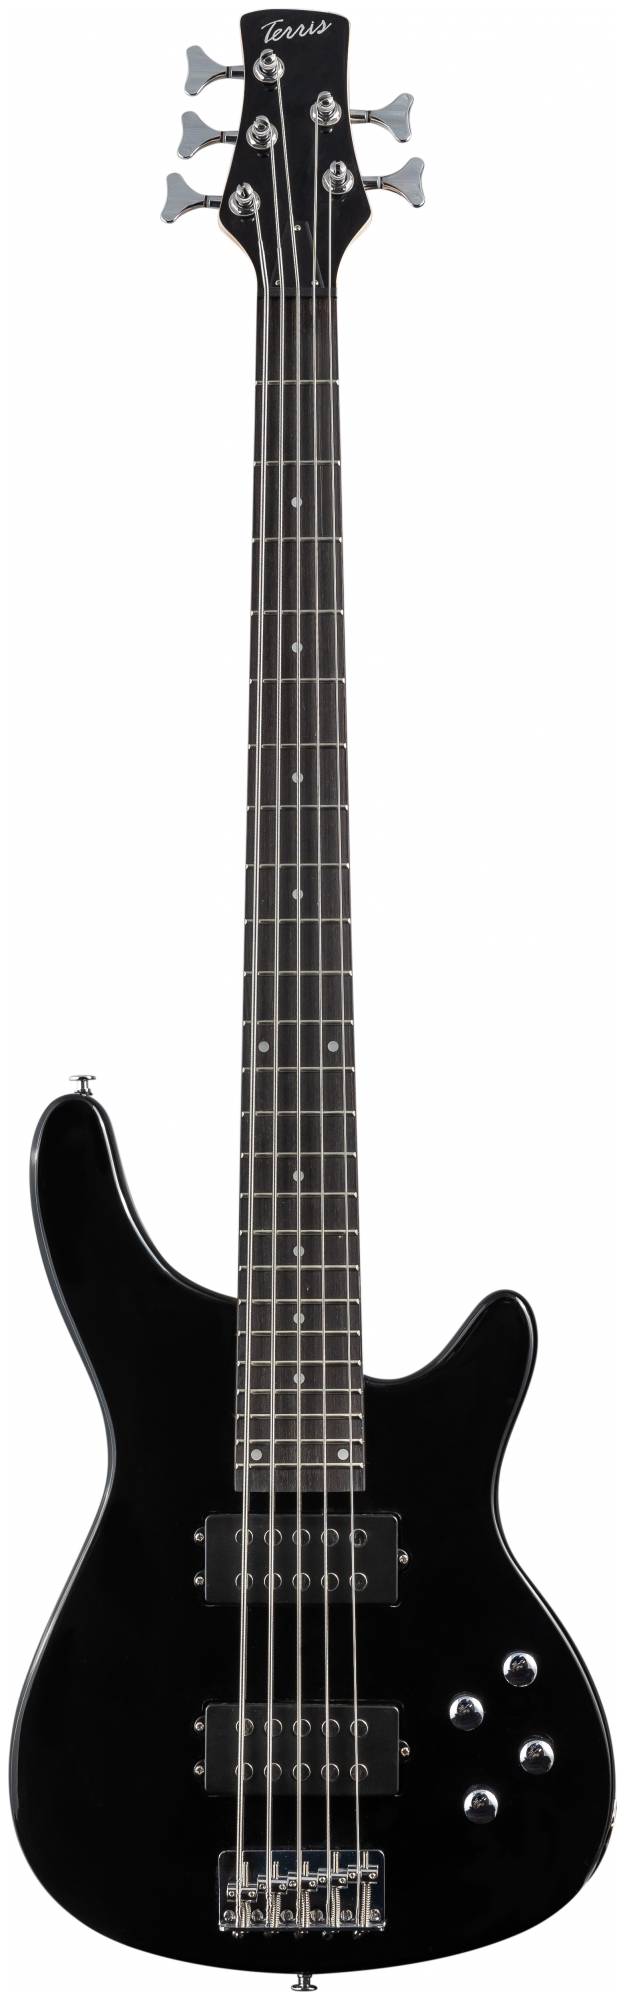 Бас-гитара Terris THB-43-5 BK 5 струн - купить в ООО"9936.ру", цена на Мегамаркет